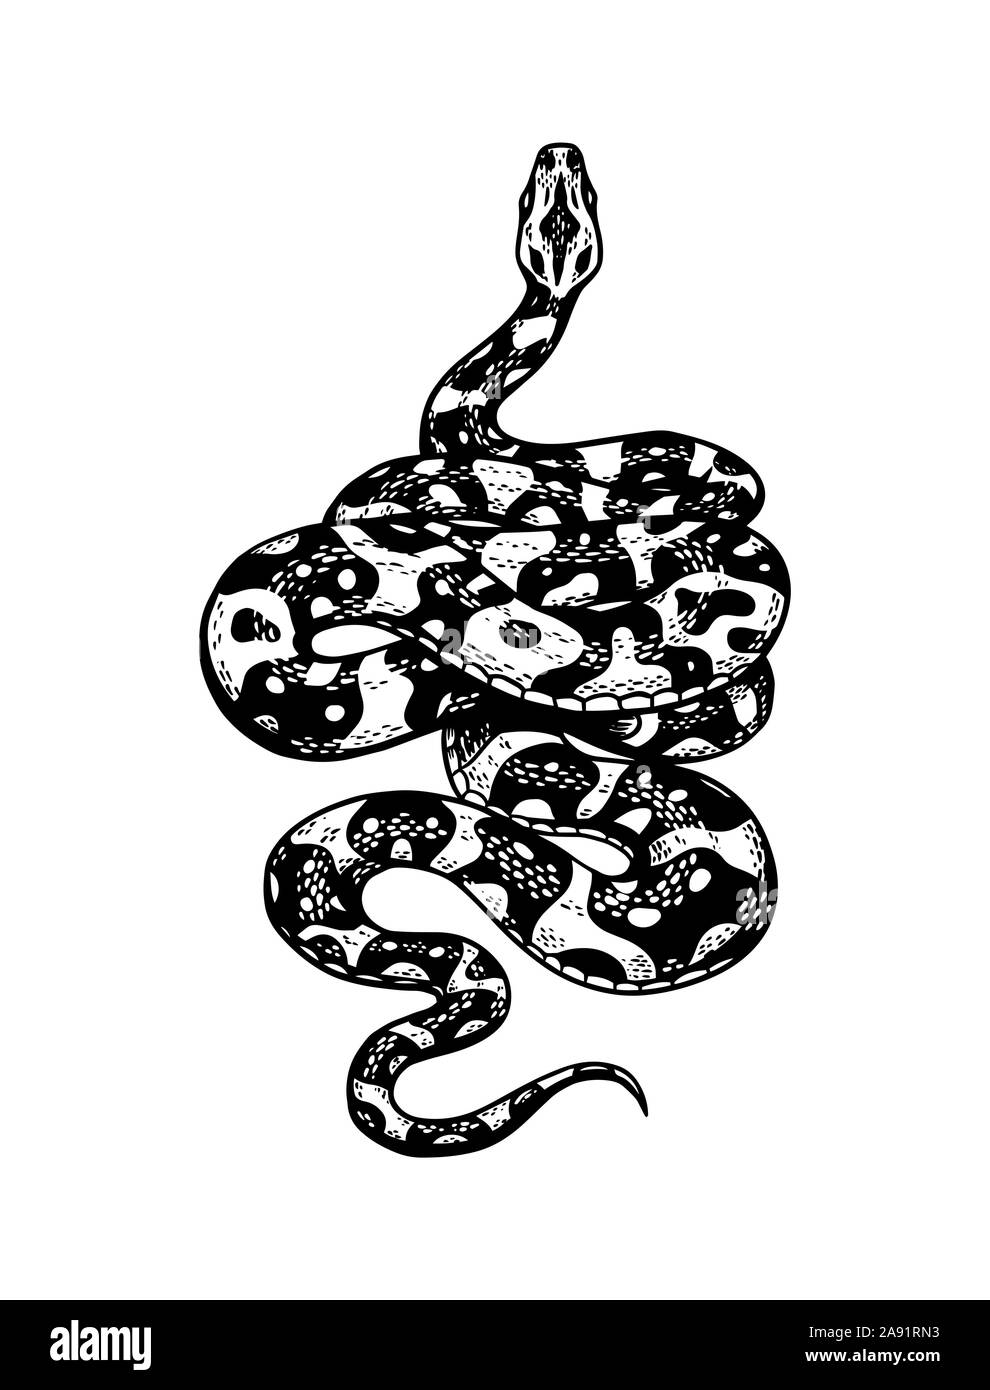 Schlange im Vintage Style. Schlange cobra oder Python oder giftige Viper. Graviert Hand gezeichnet Alte reptile Skizze für Tattoo. Anaconda für Aufkleber oder Logo oder Stock Vektor